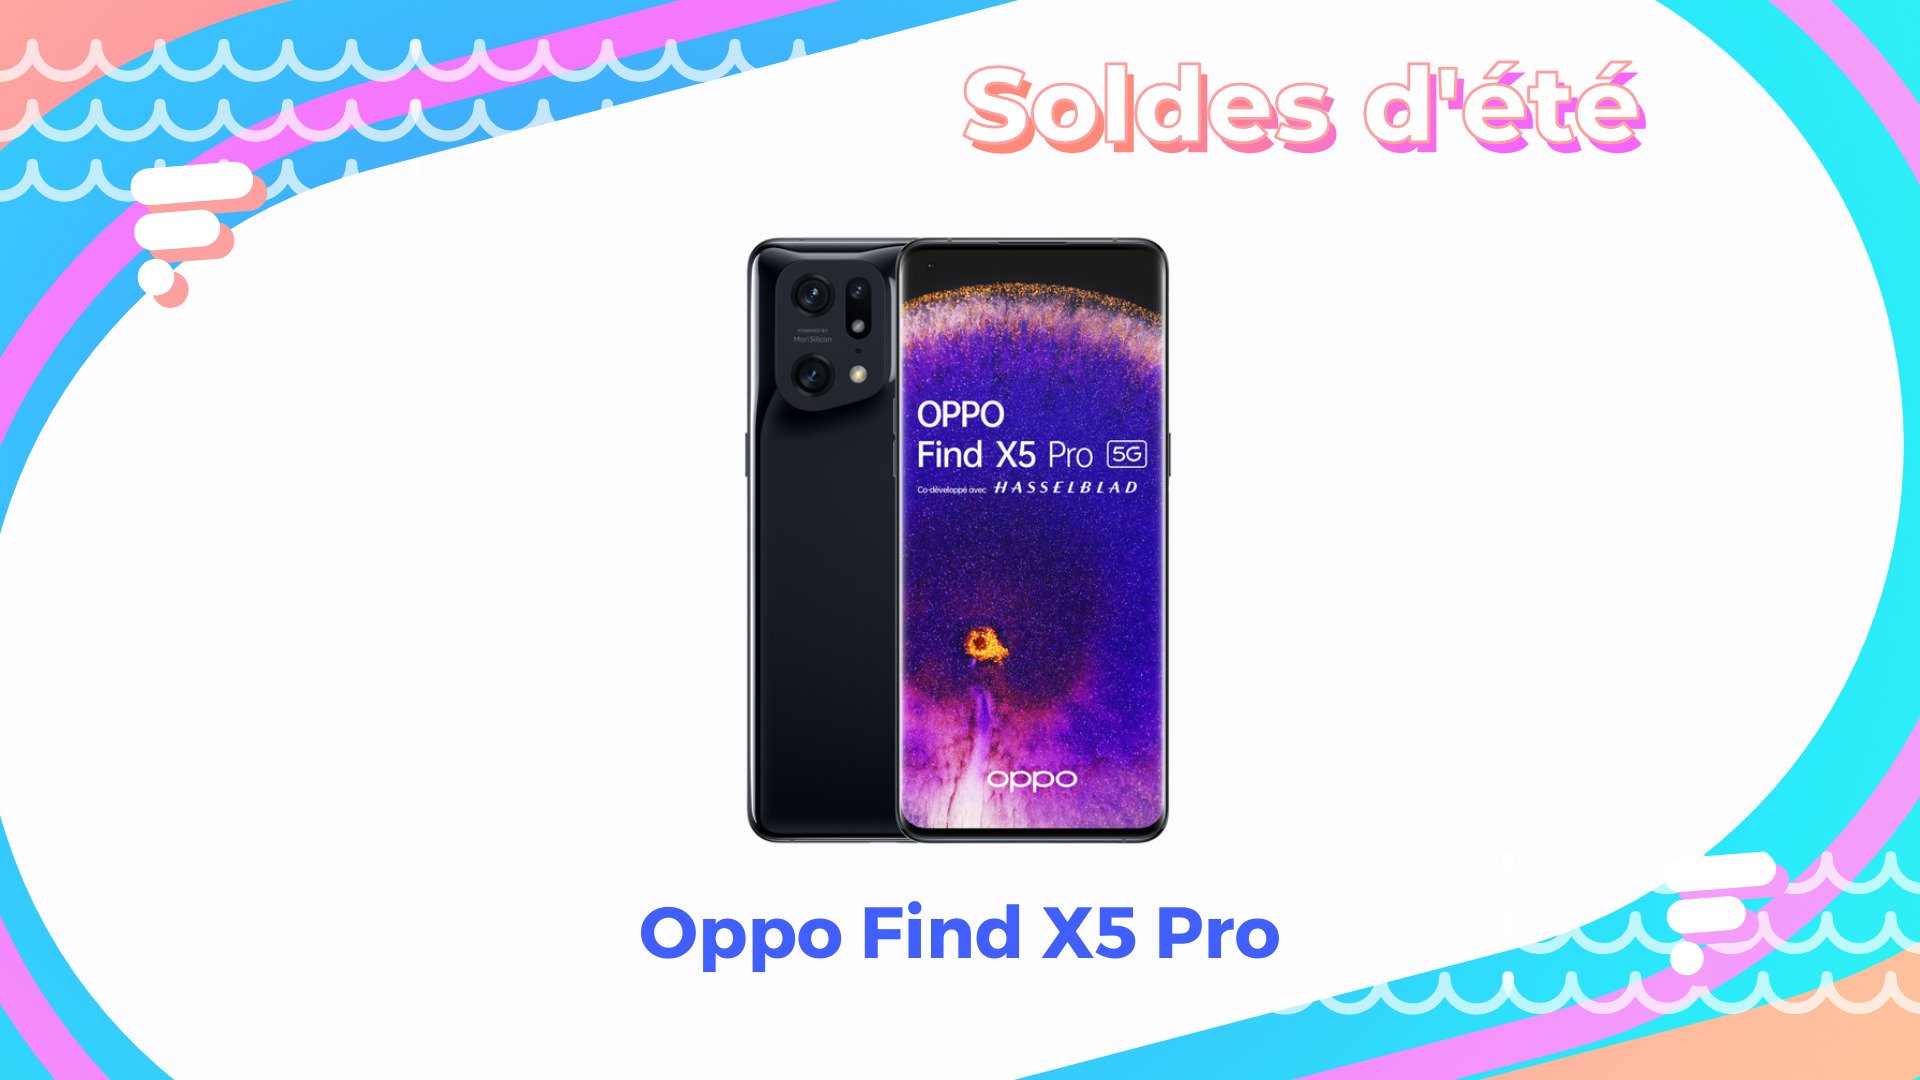 L'Oppo Find X5 Pro profite enfin d'une baisse de prix grâce aux soldes